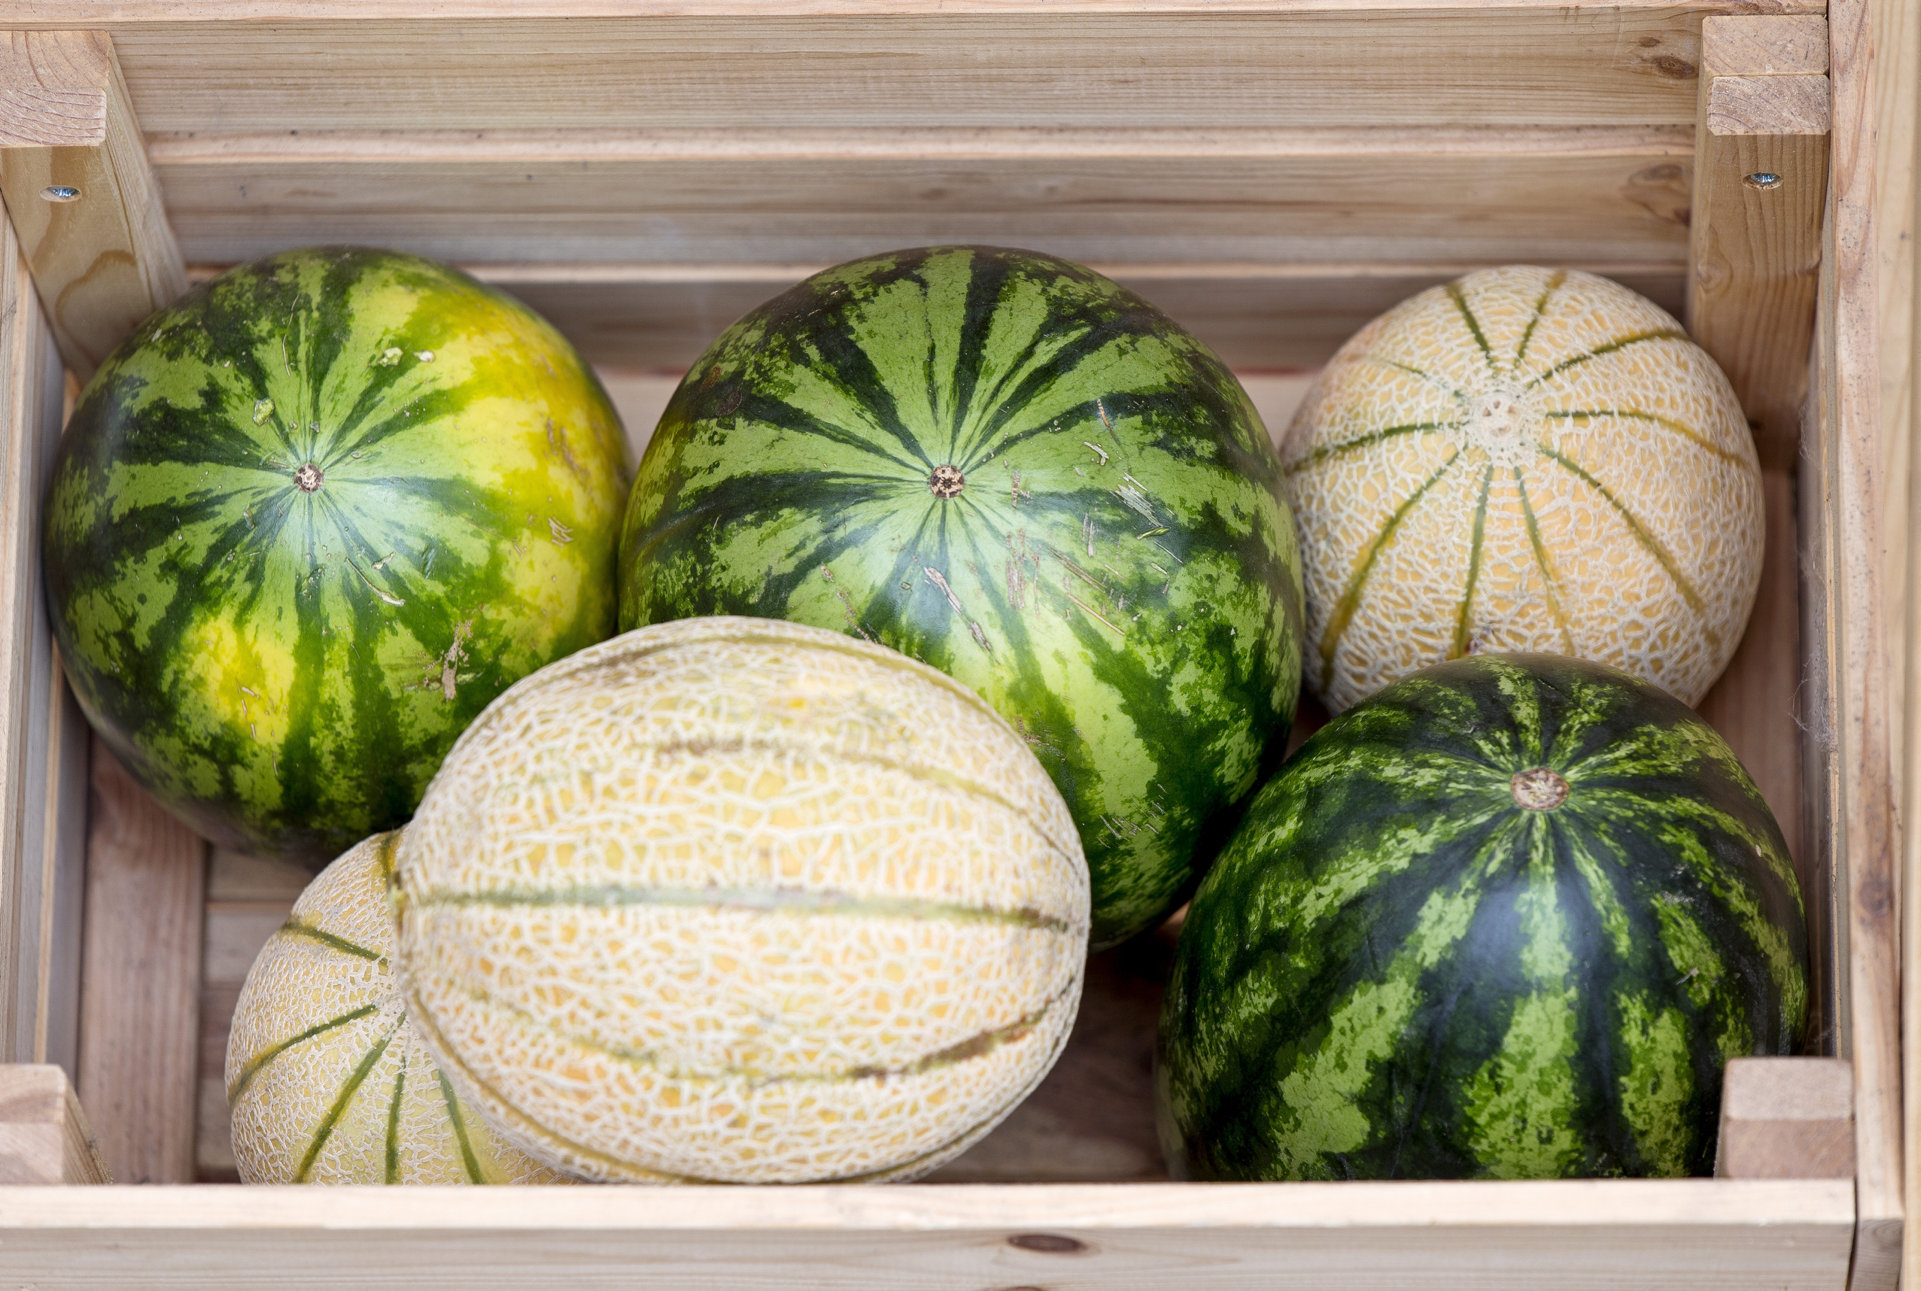 Ungerechtfertigten Preissenkungen der Supermärkte für Melonen könnten die heimischen Erzeuger vernichten